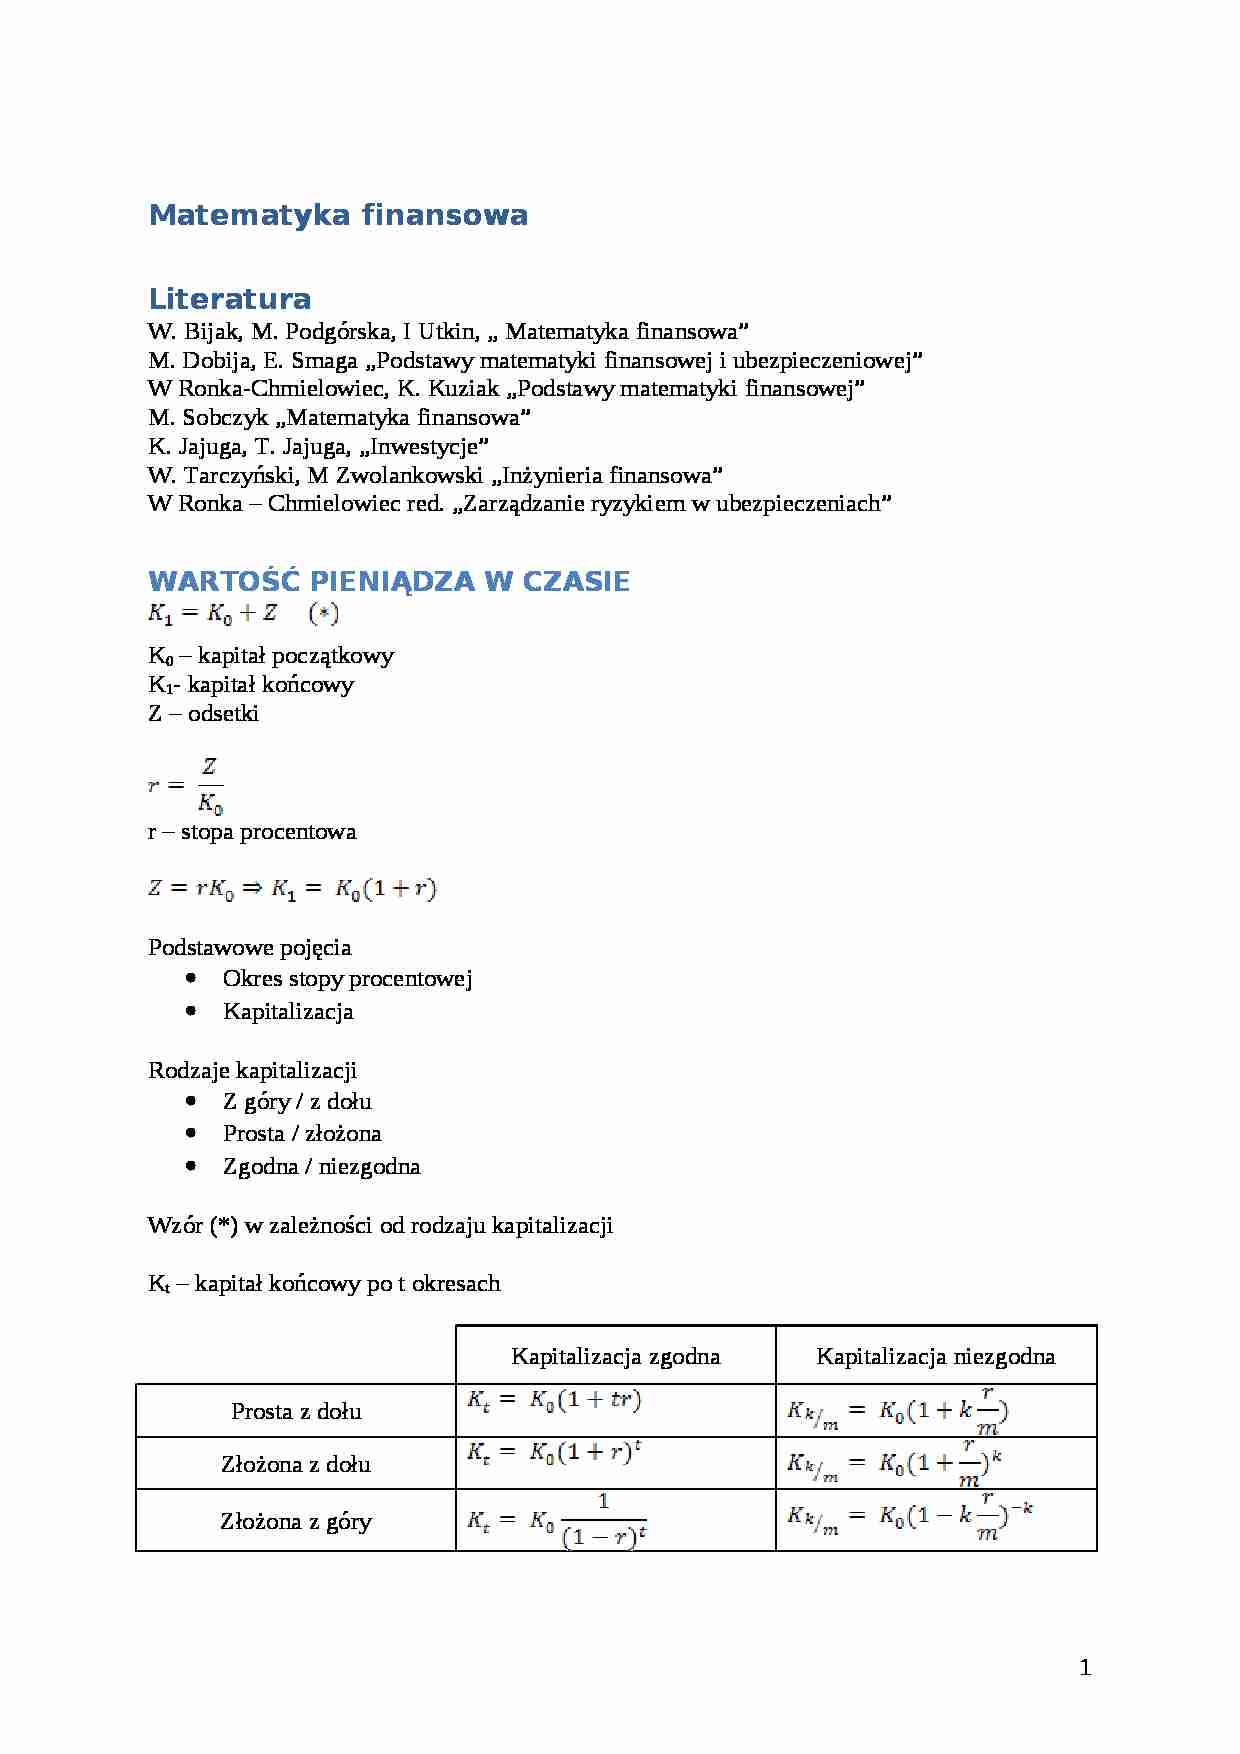 Matematyka Finansowa - Wykład - Witold Orzeszko - strona 1